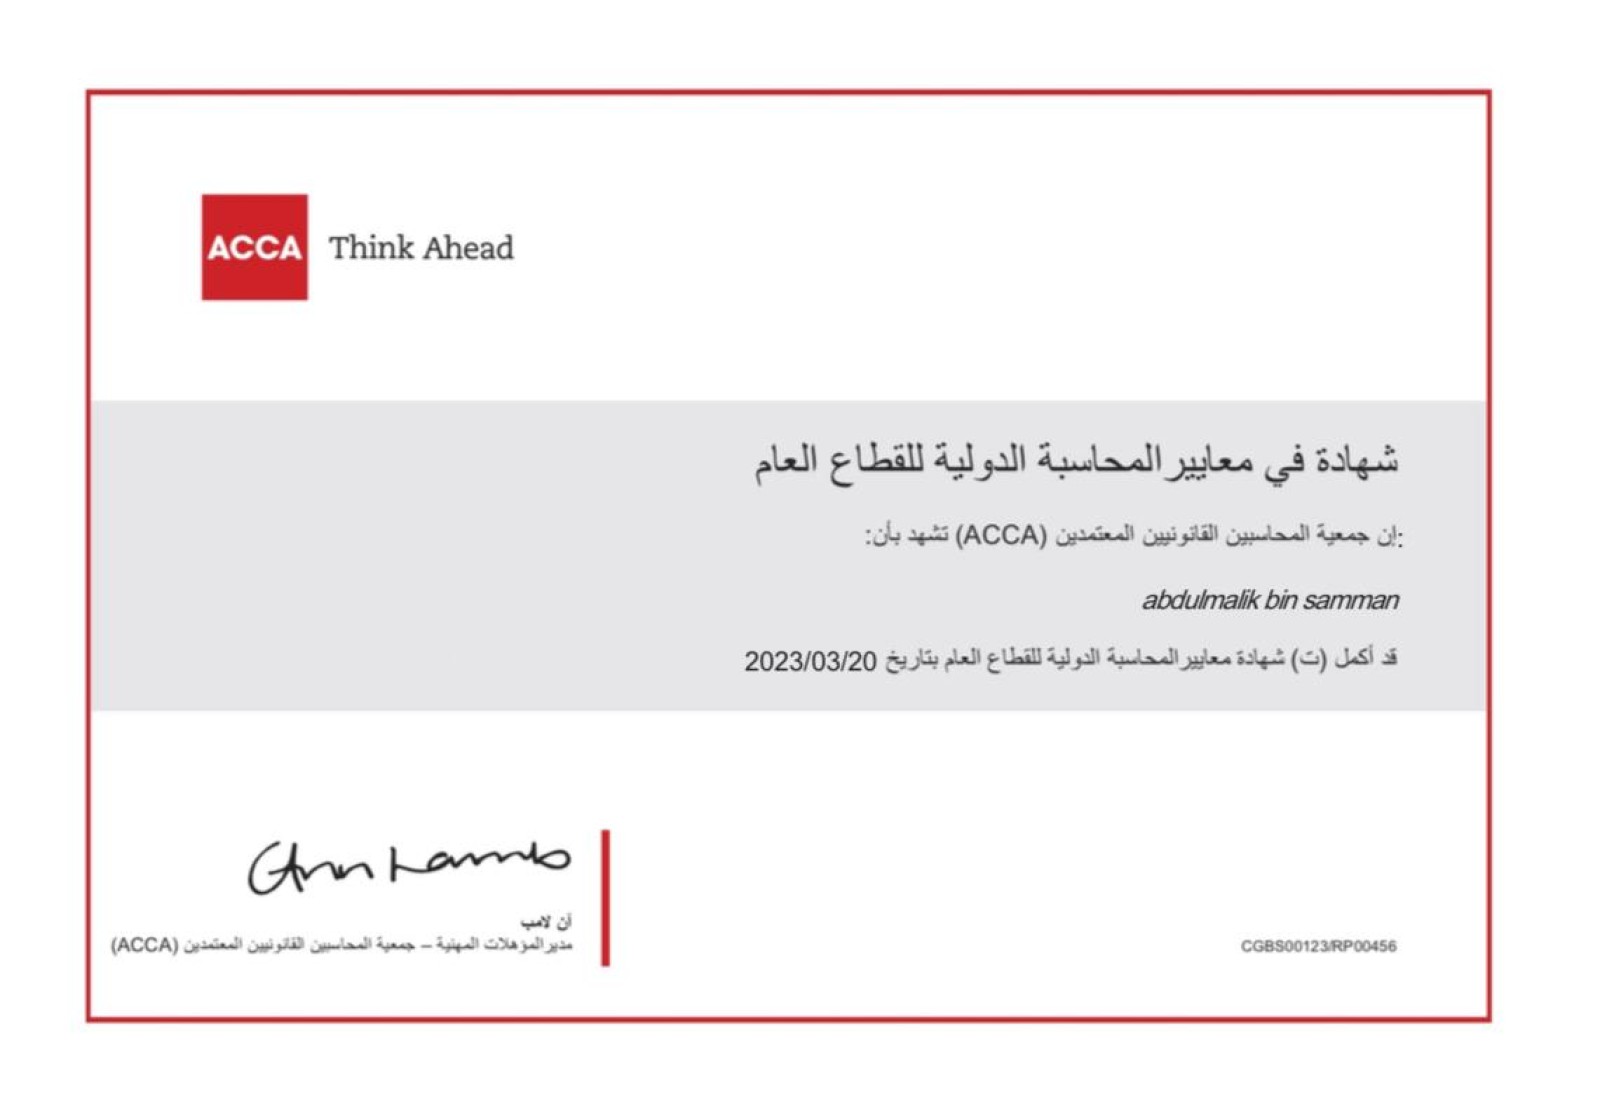 حصل موظفنا عبد الملك بن سمان على شهادة  معايير المحاسبة فى القطاع العام  IPSAS